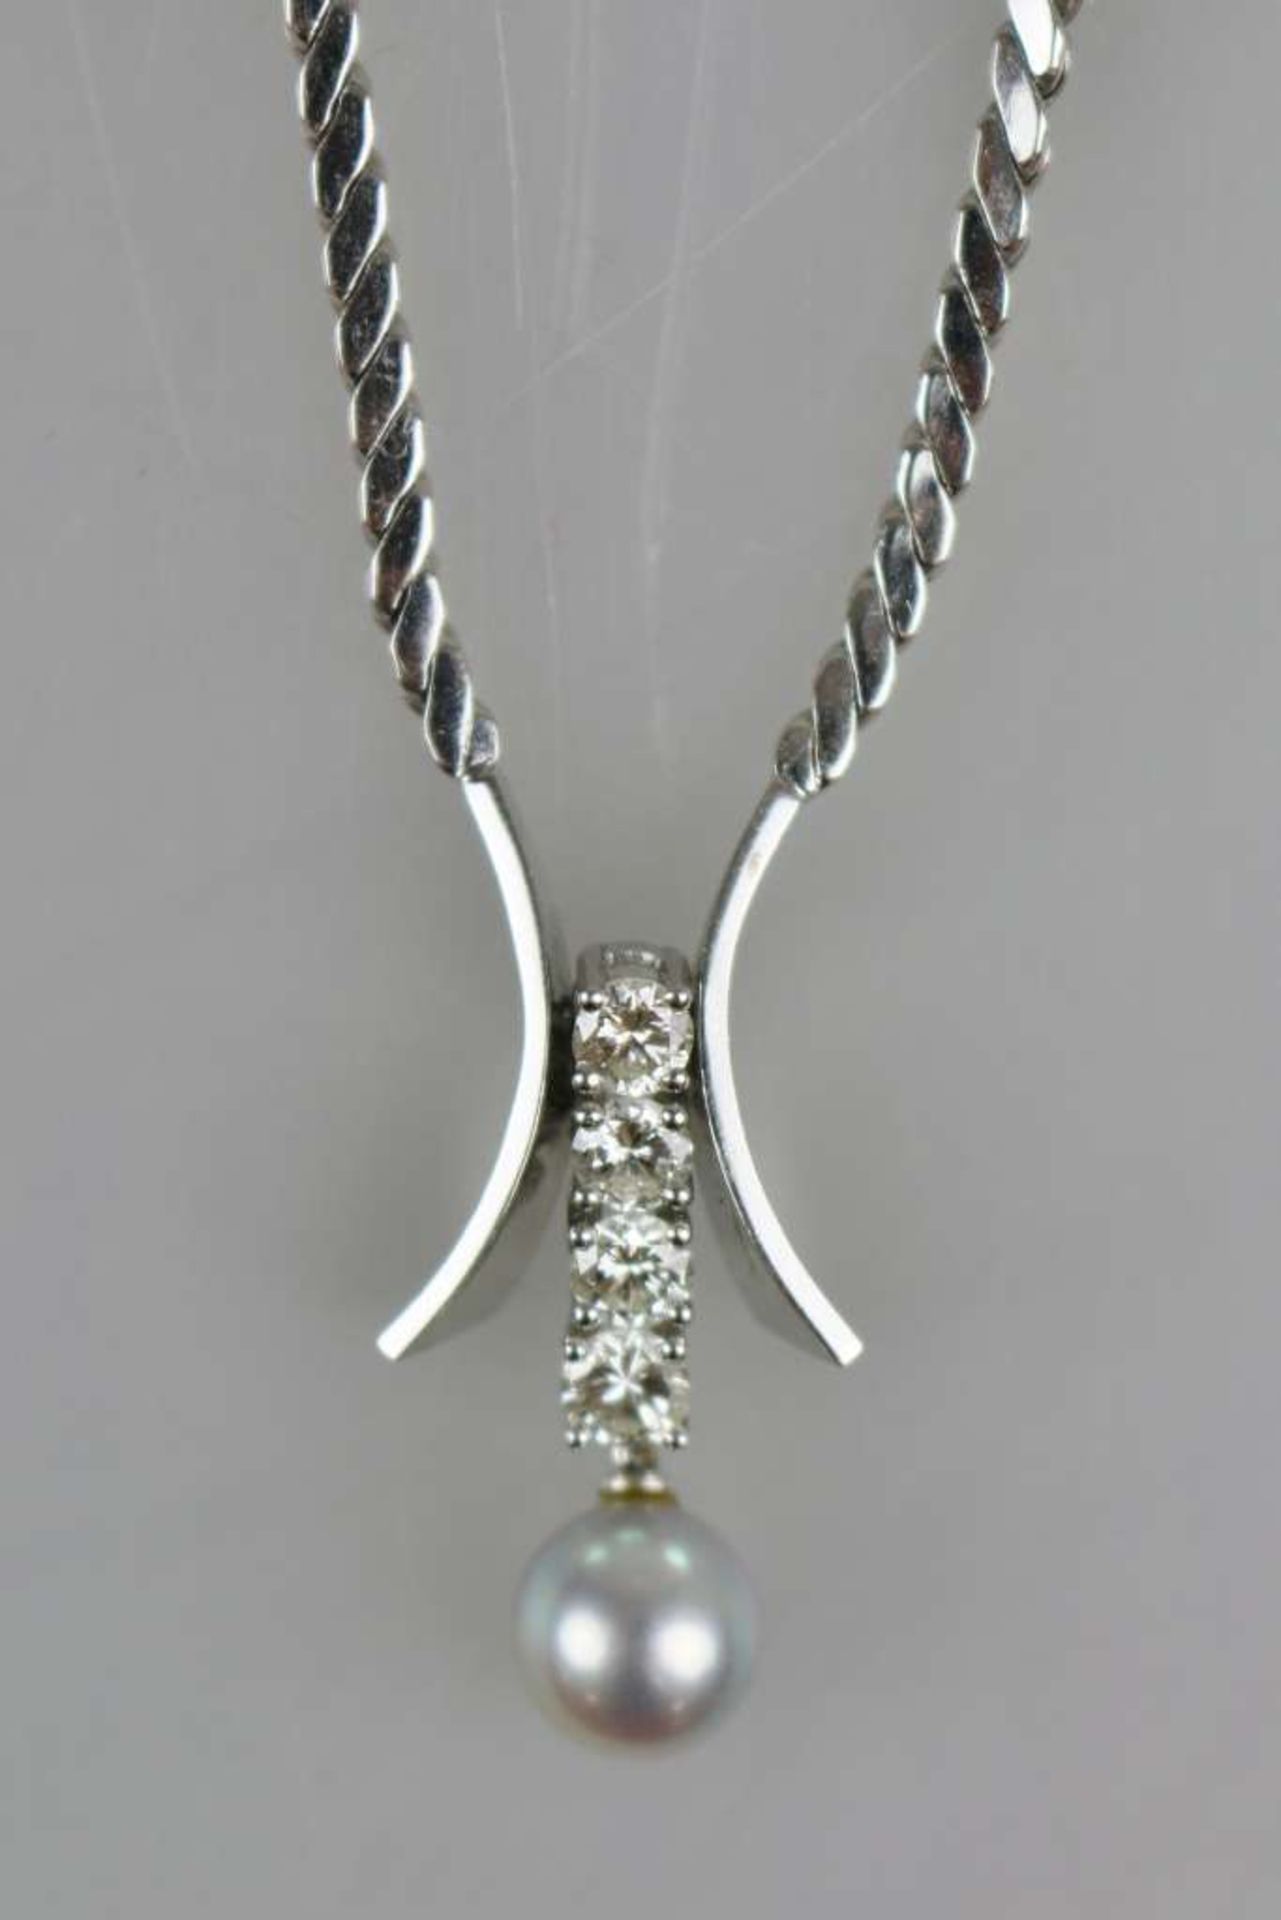 Halskette, 585er WG mit 2 sichelförmigen Enden, dazwischen eingefasst 4 Brillanten in Reihe von je - Bild 2 aus 3